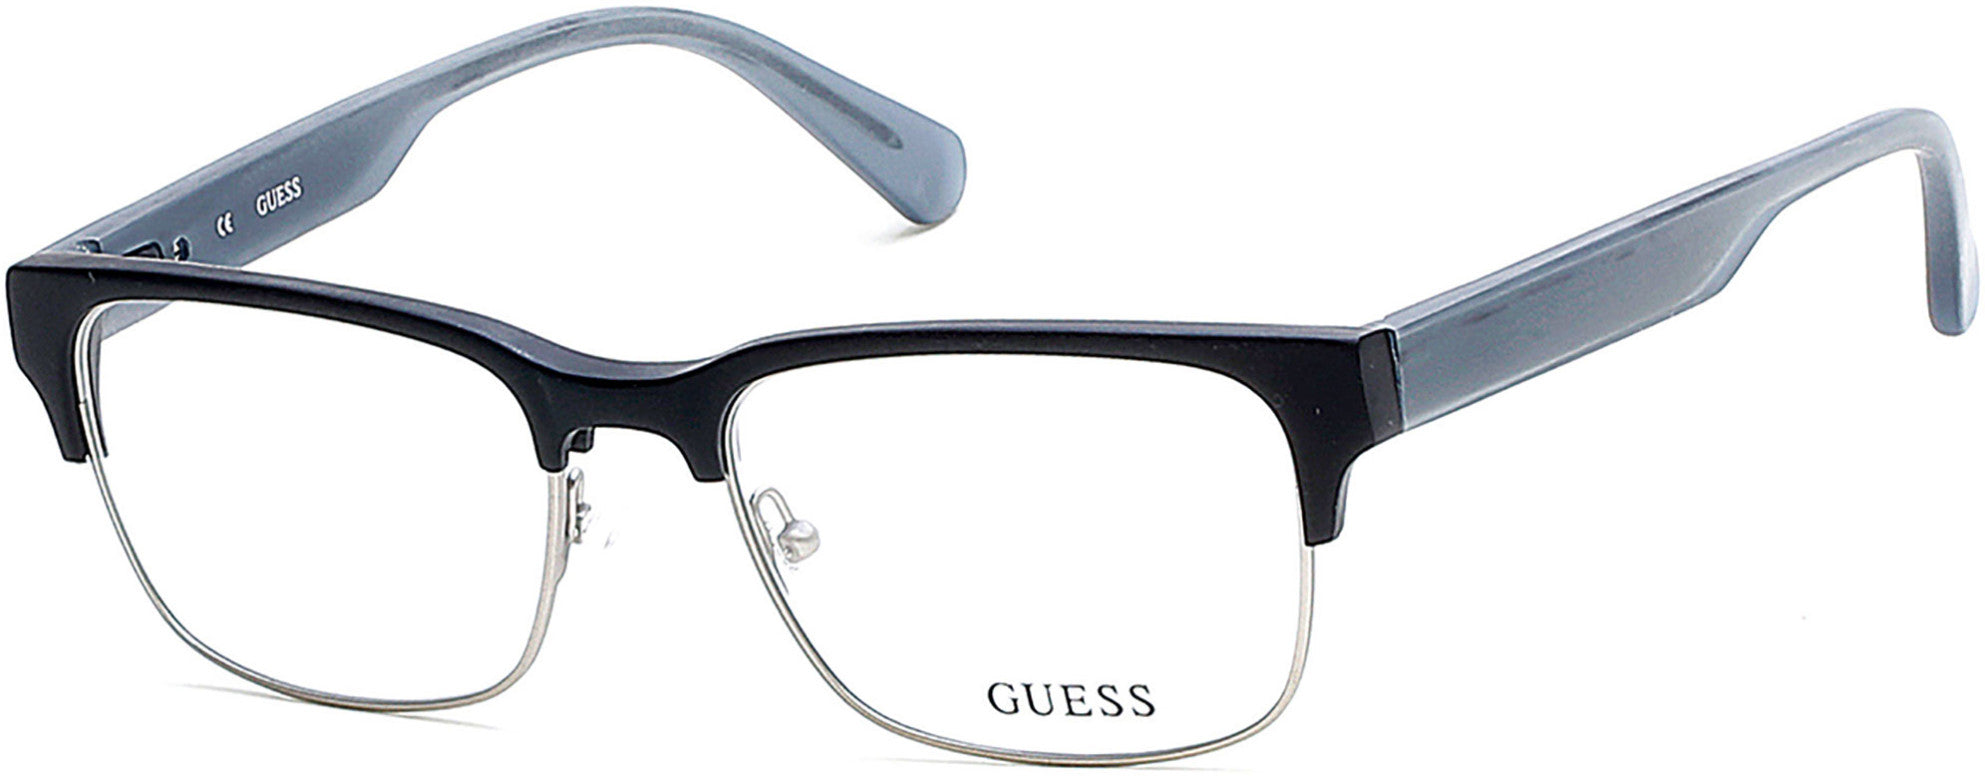 Guess GU1894 Eyeglasses 002-002 - Matte Black